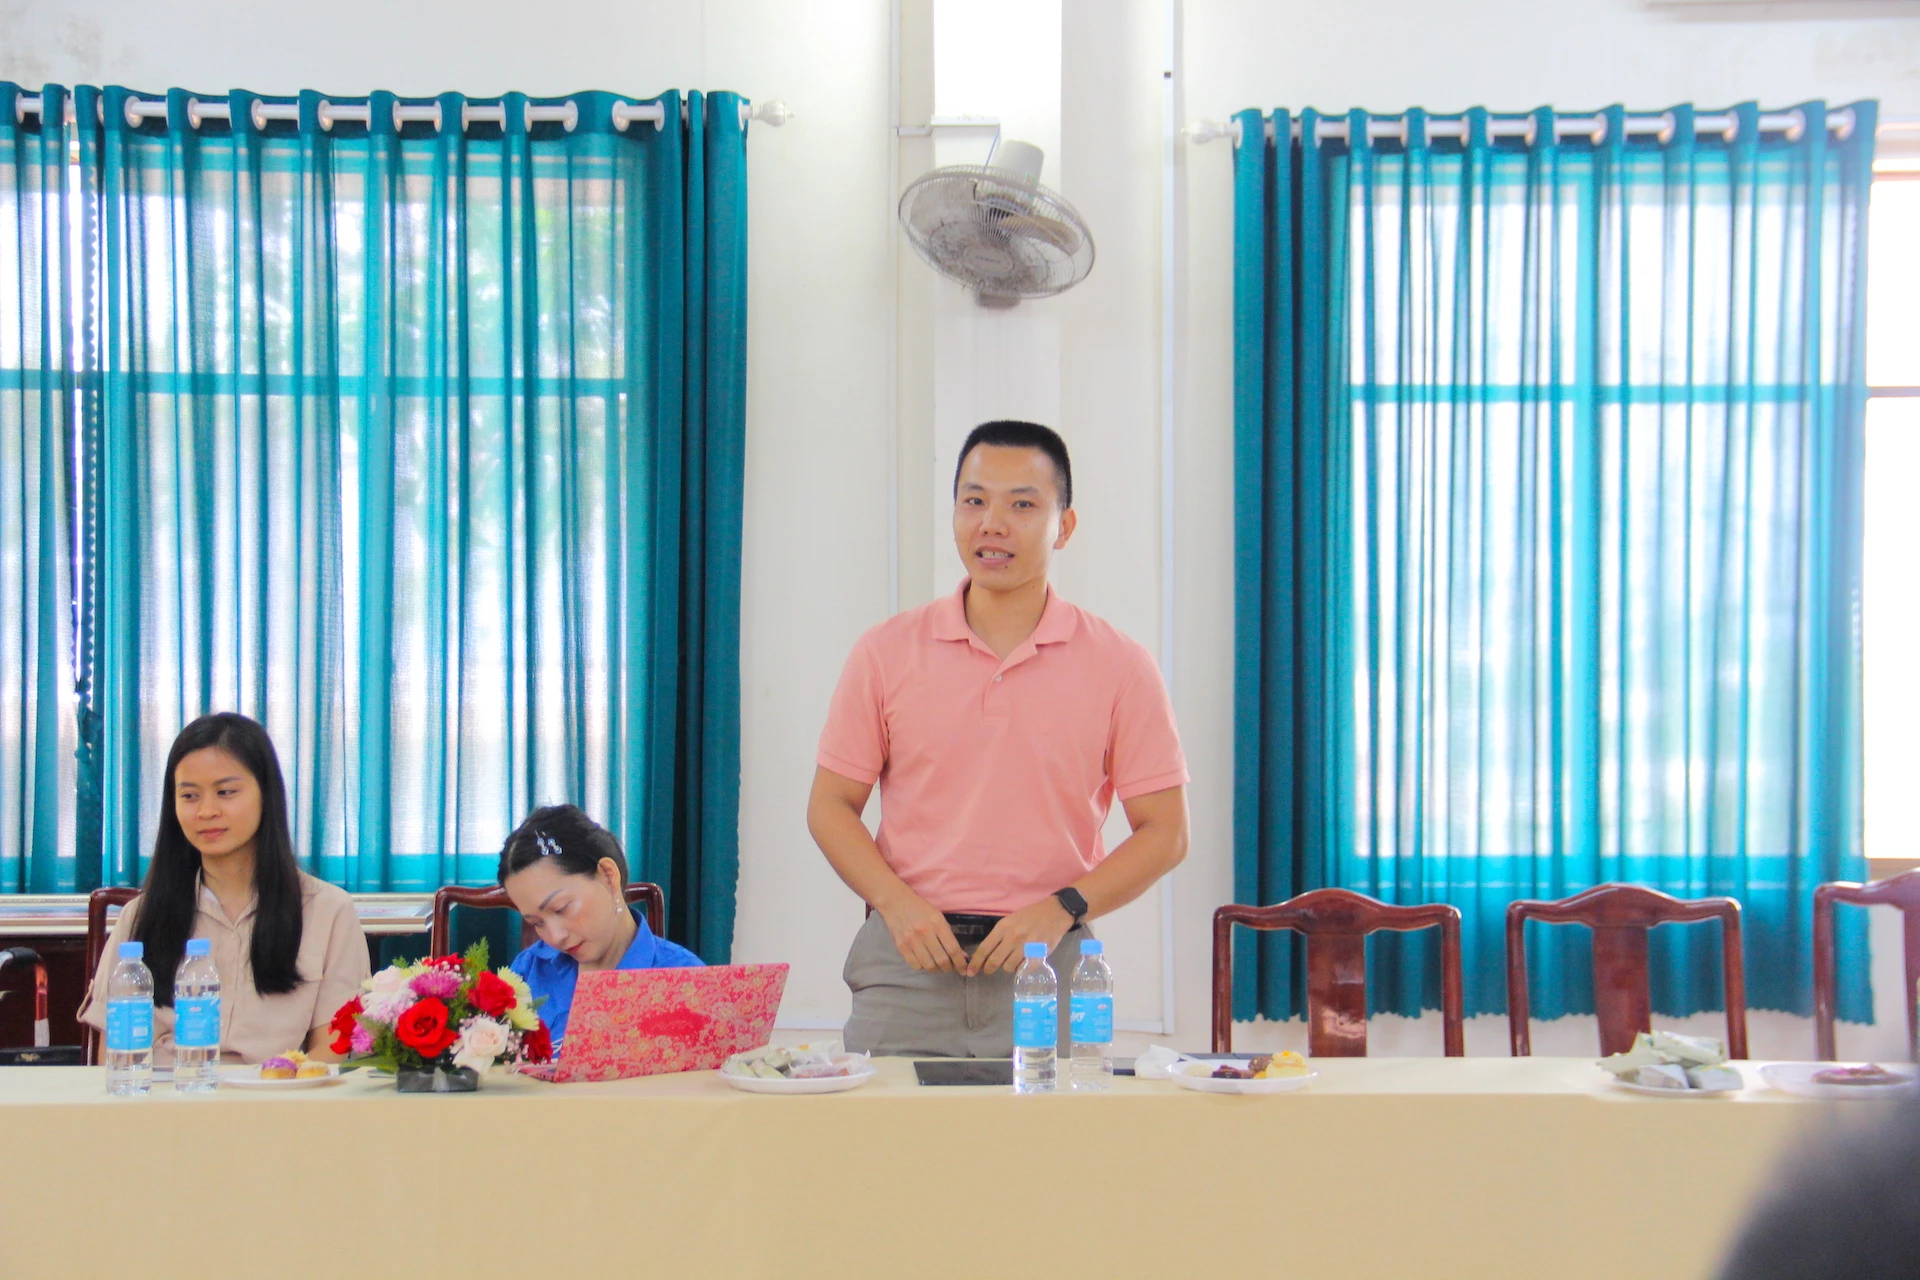 Hiện là Giám đốc công ty Tôn An Thái - nguyên Phó Chủ tịch tổ chức BNI Bombo Chapter (Bình Phước), anh Nguyễn Thế Tùng - cựu học sinh chuyên Toán Khóa 2 của trường THPT chuyên Quang Trung khẳng định mộ